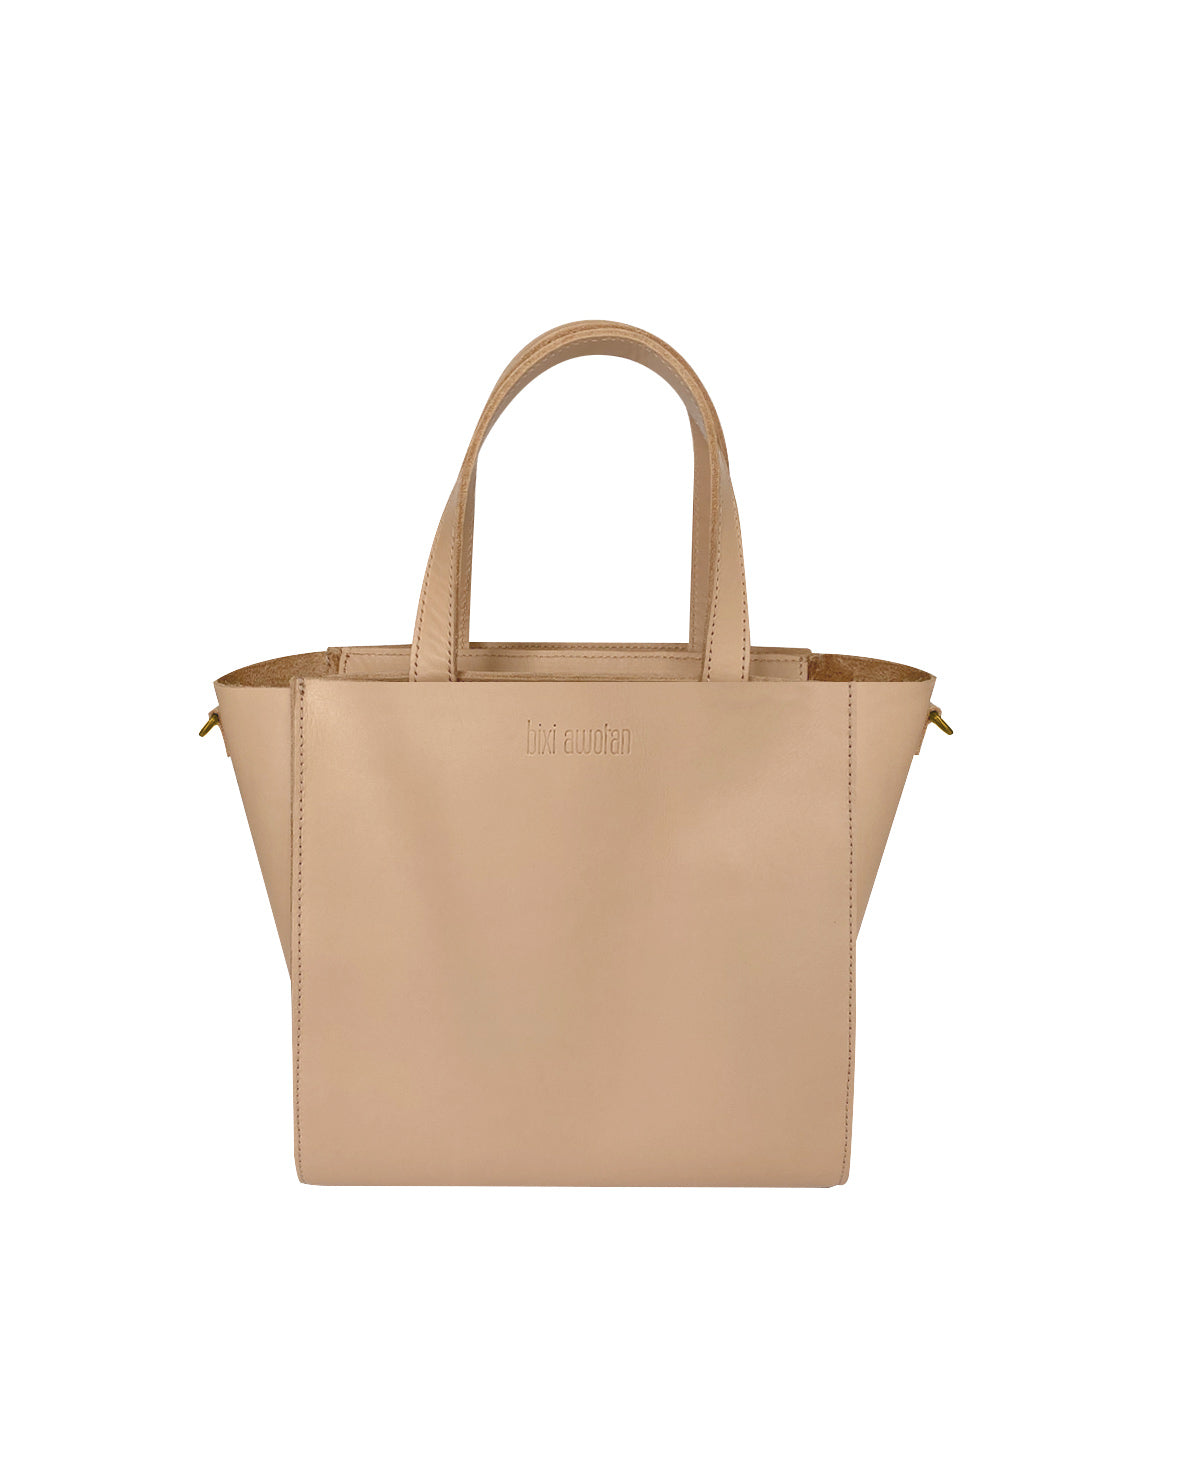 Kari Nude Leather Handbag